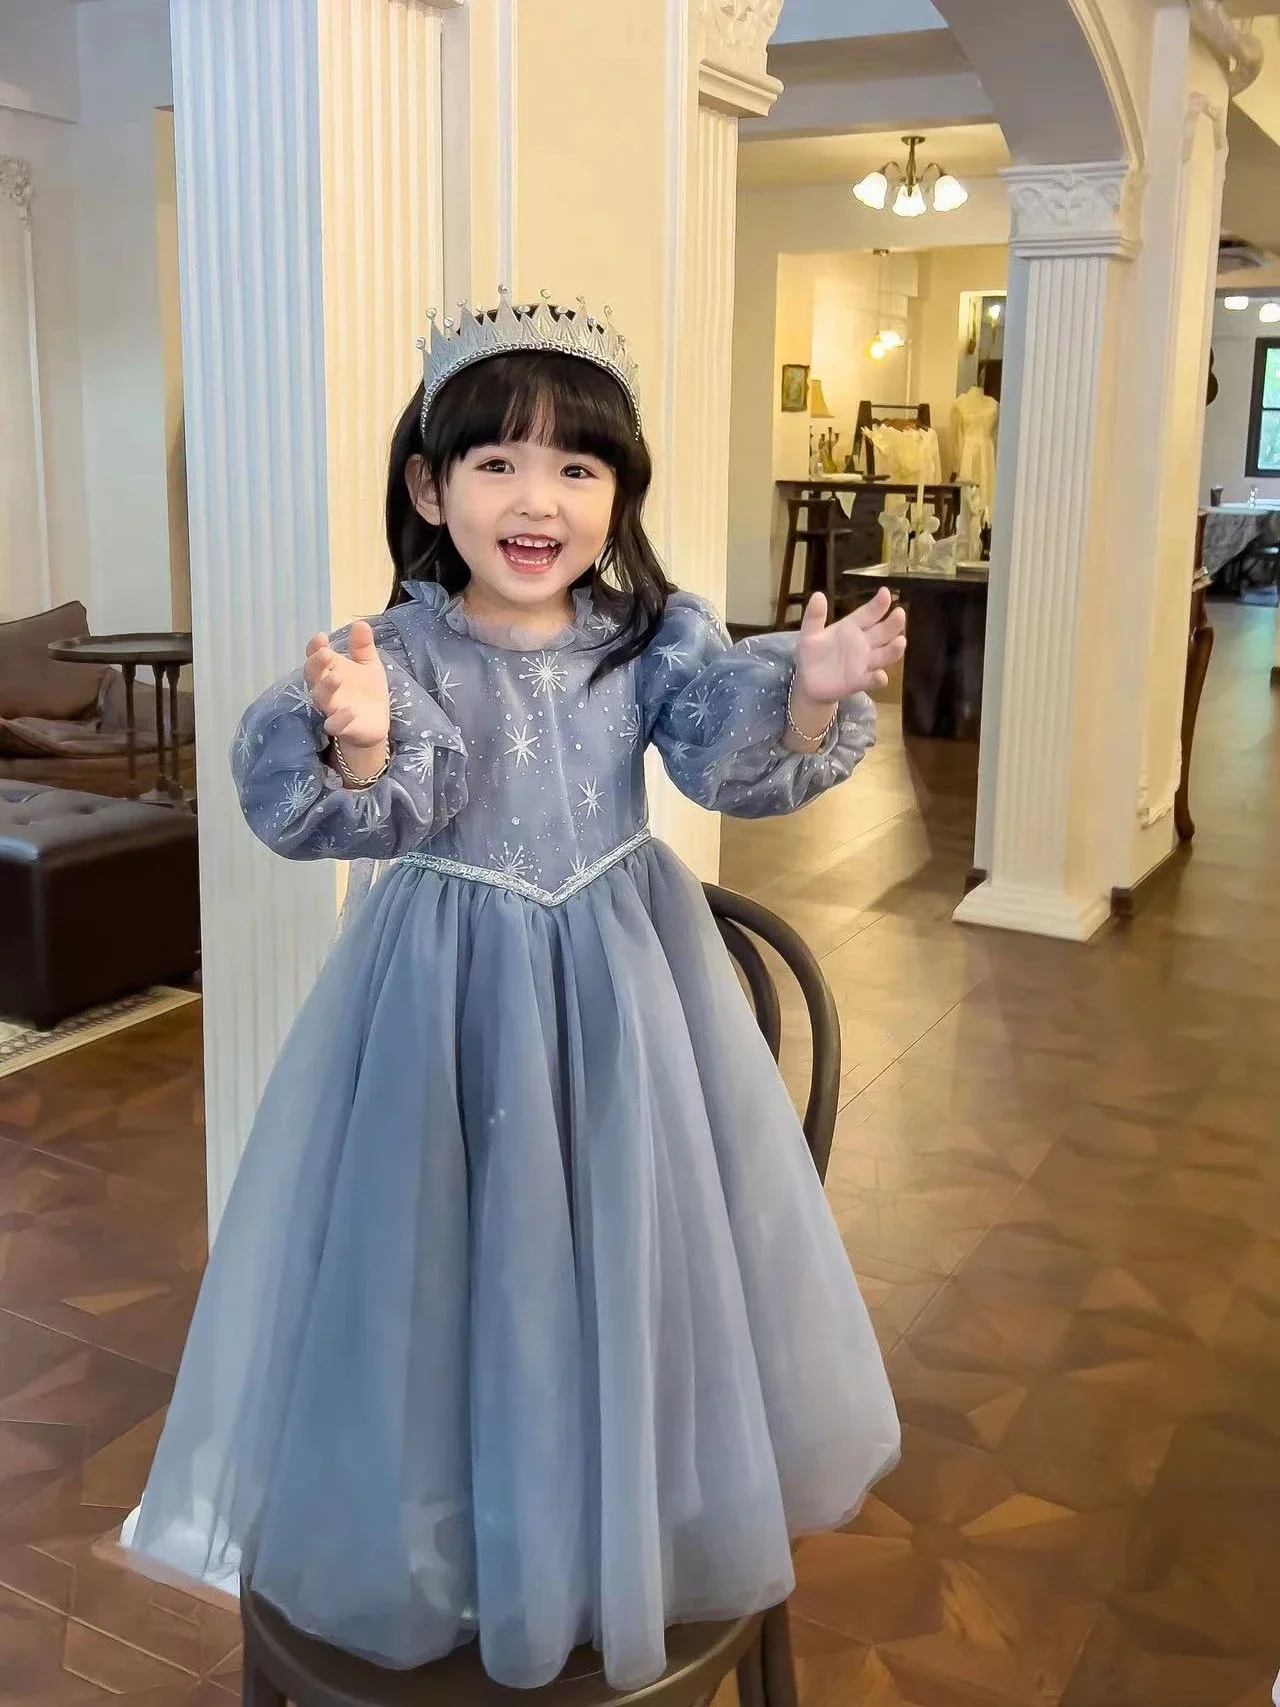 

Elsa Frozen Little Girl Birthday Dress Long Sleeved Gauze Autumn Winter Elegant Princess Gala Dresses for Girls 3-10 Years Old